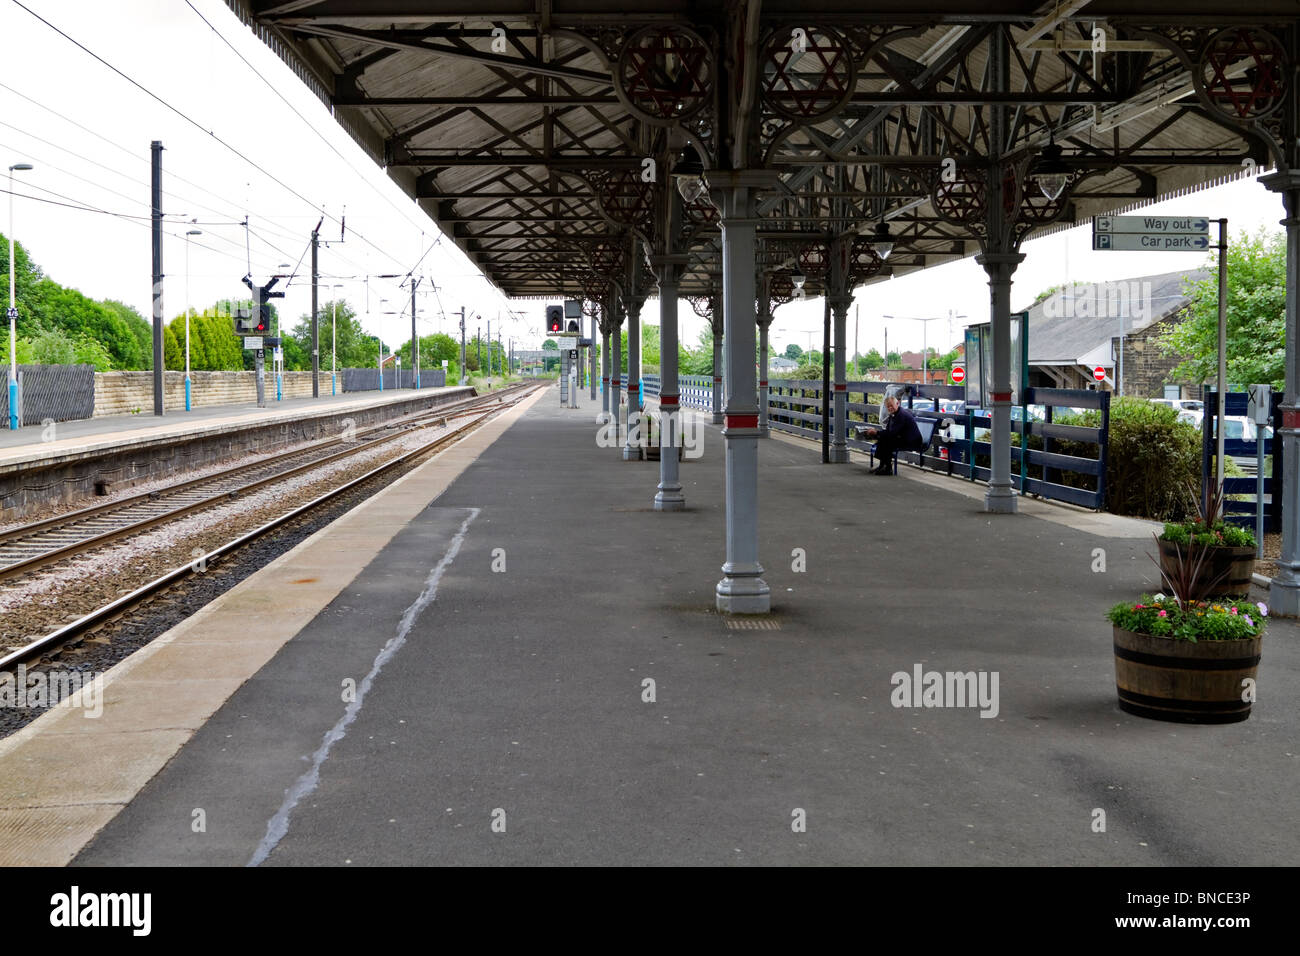 Morpeth Bahnhof. Ein Passagier sitzt auf einer Bank auf der leeren Plattform einen Zug warten. Stockfoto